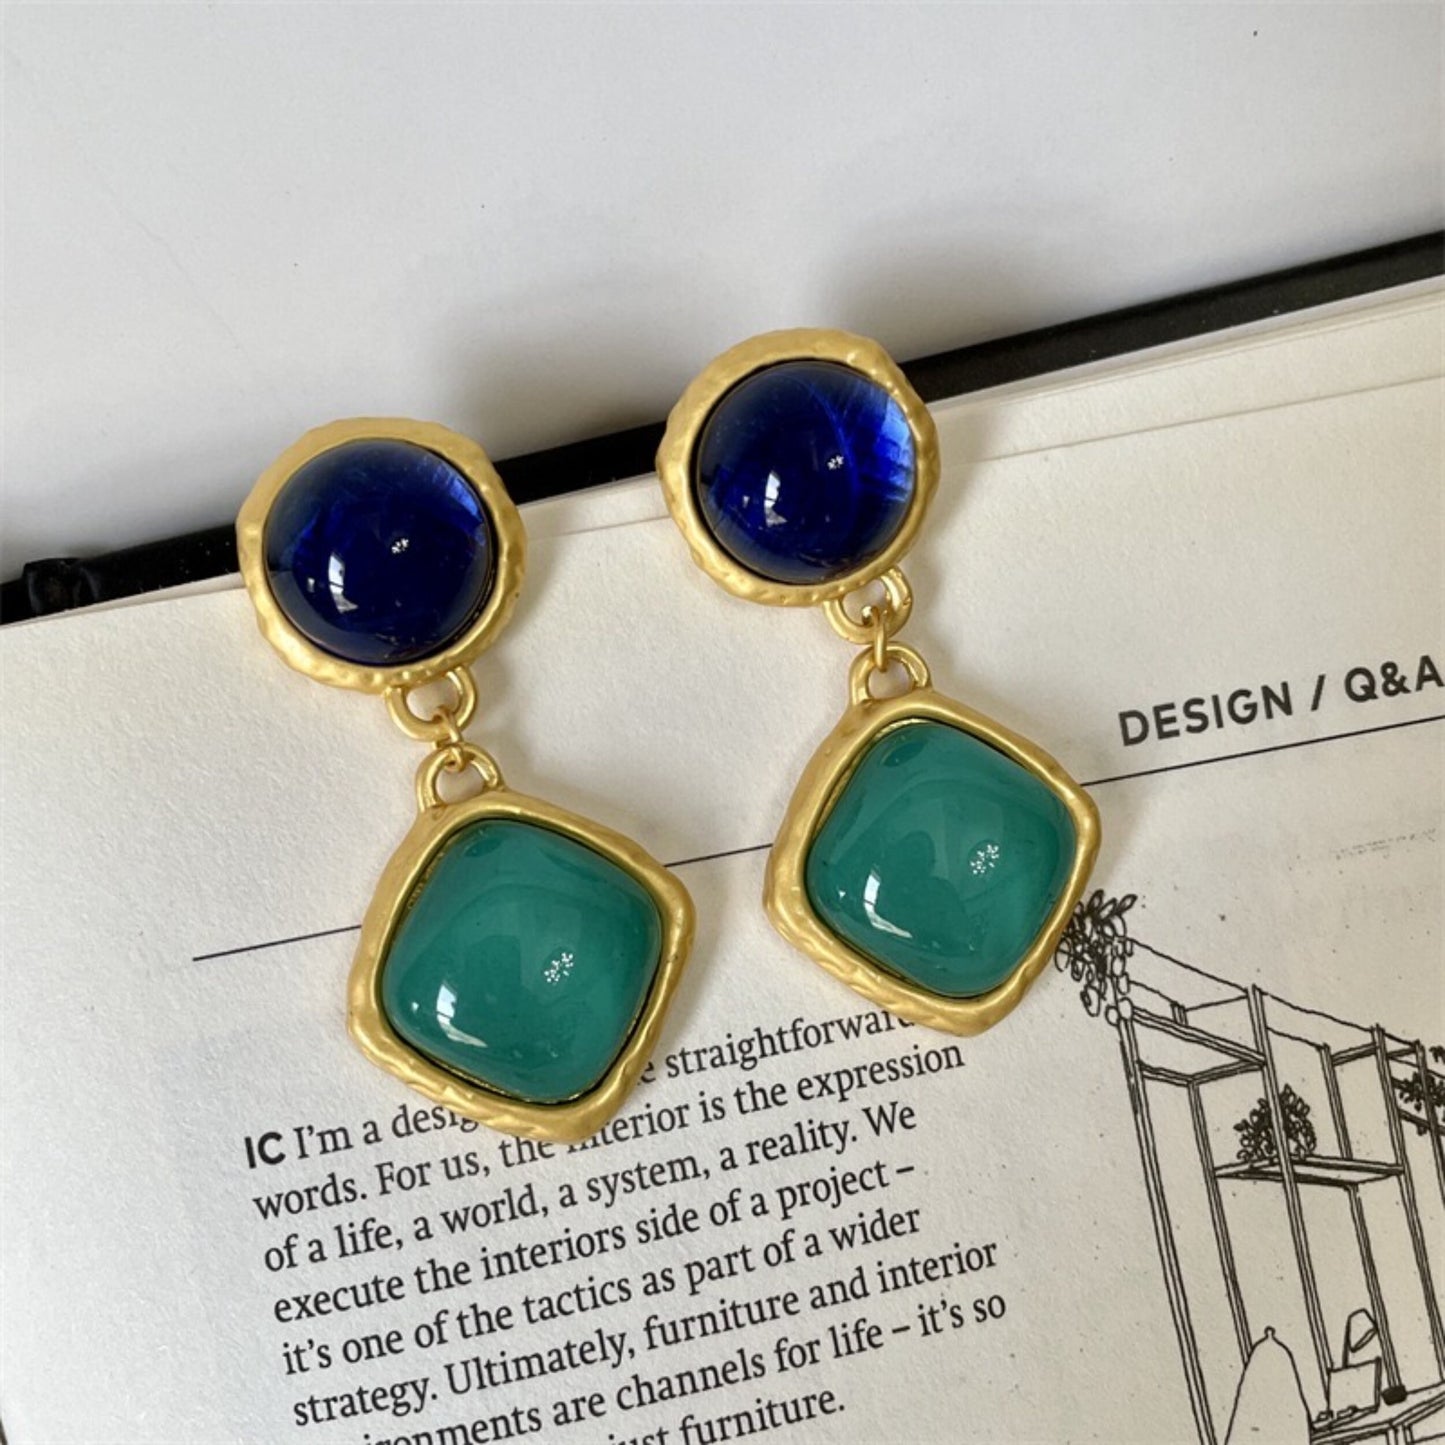 90s vintage style earrings, Aqua green royal blue earrings, Two tone statement earrings, Antique gold dangle drop earrings, Party earrings